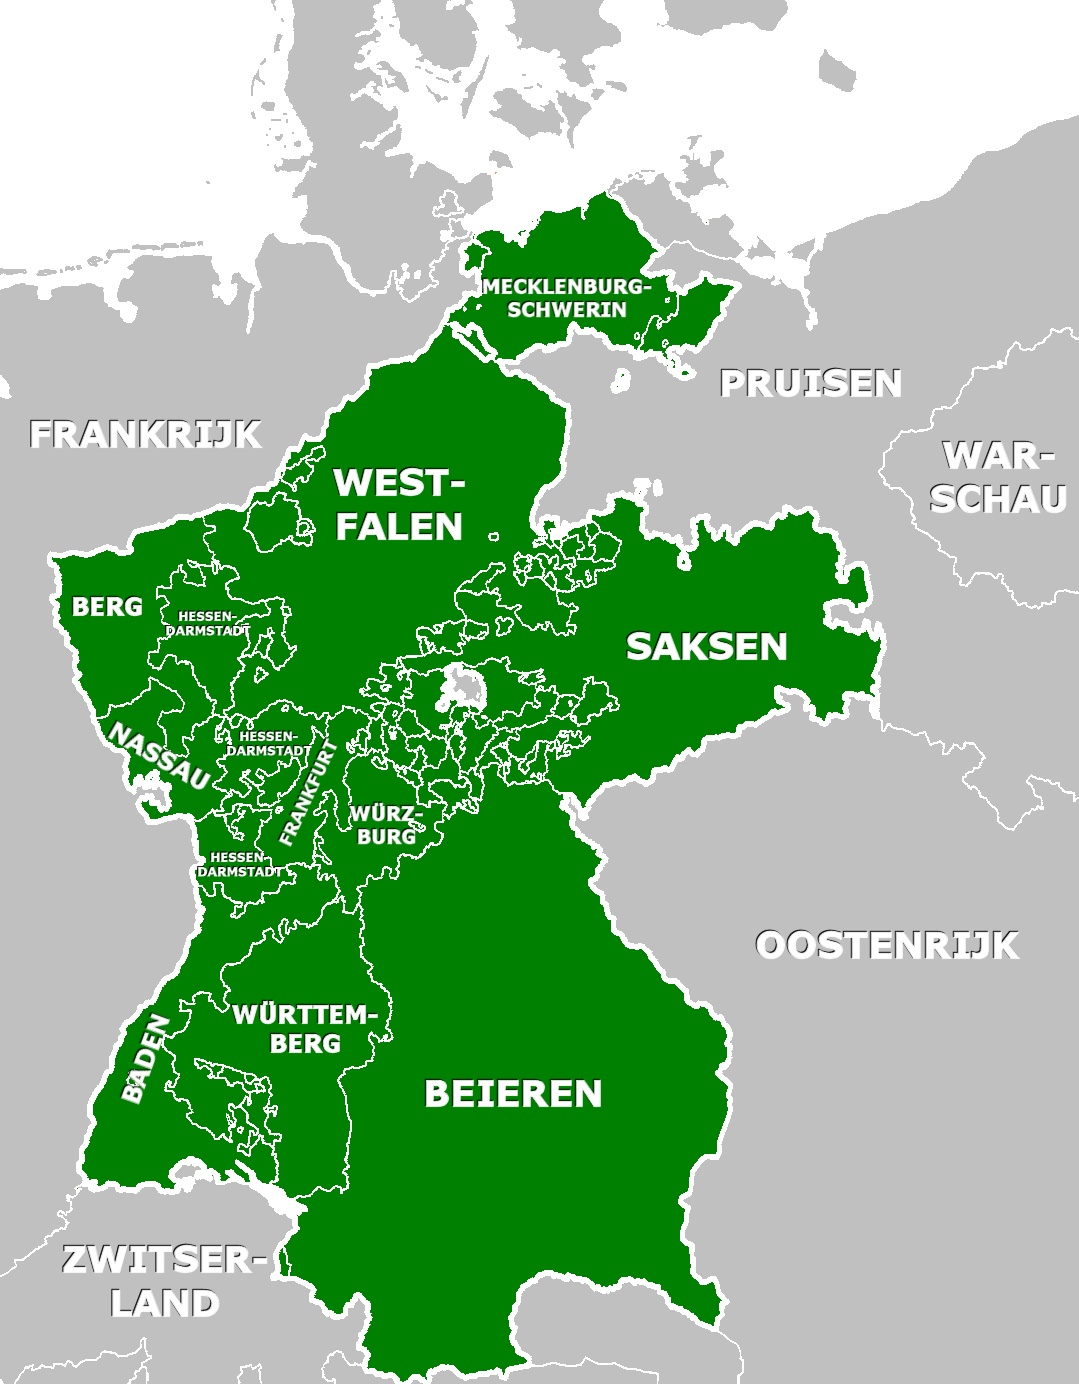 Związek Reński, Konfederacja Reńska – konfederacja państw niemieckich, zależnych od I Cesarstwa Francuskiego, 1806-1813